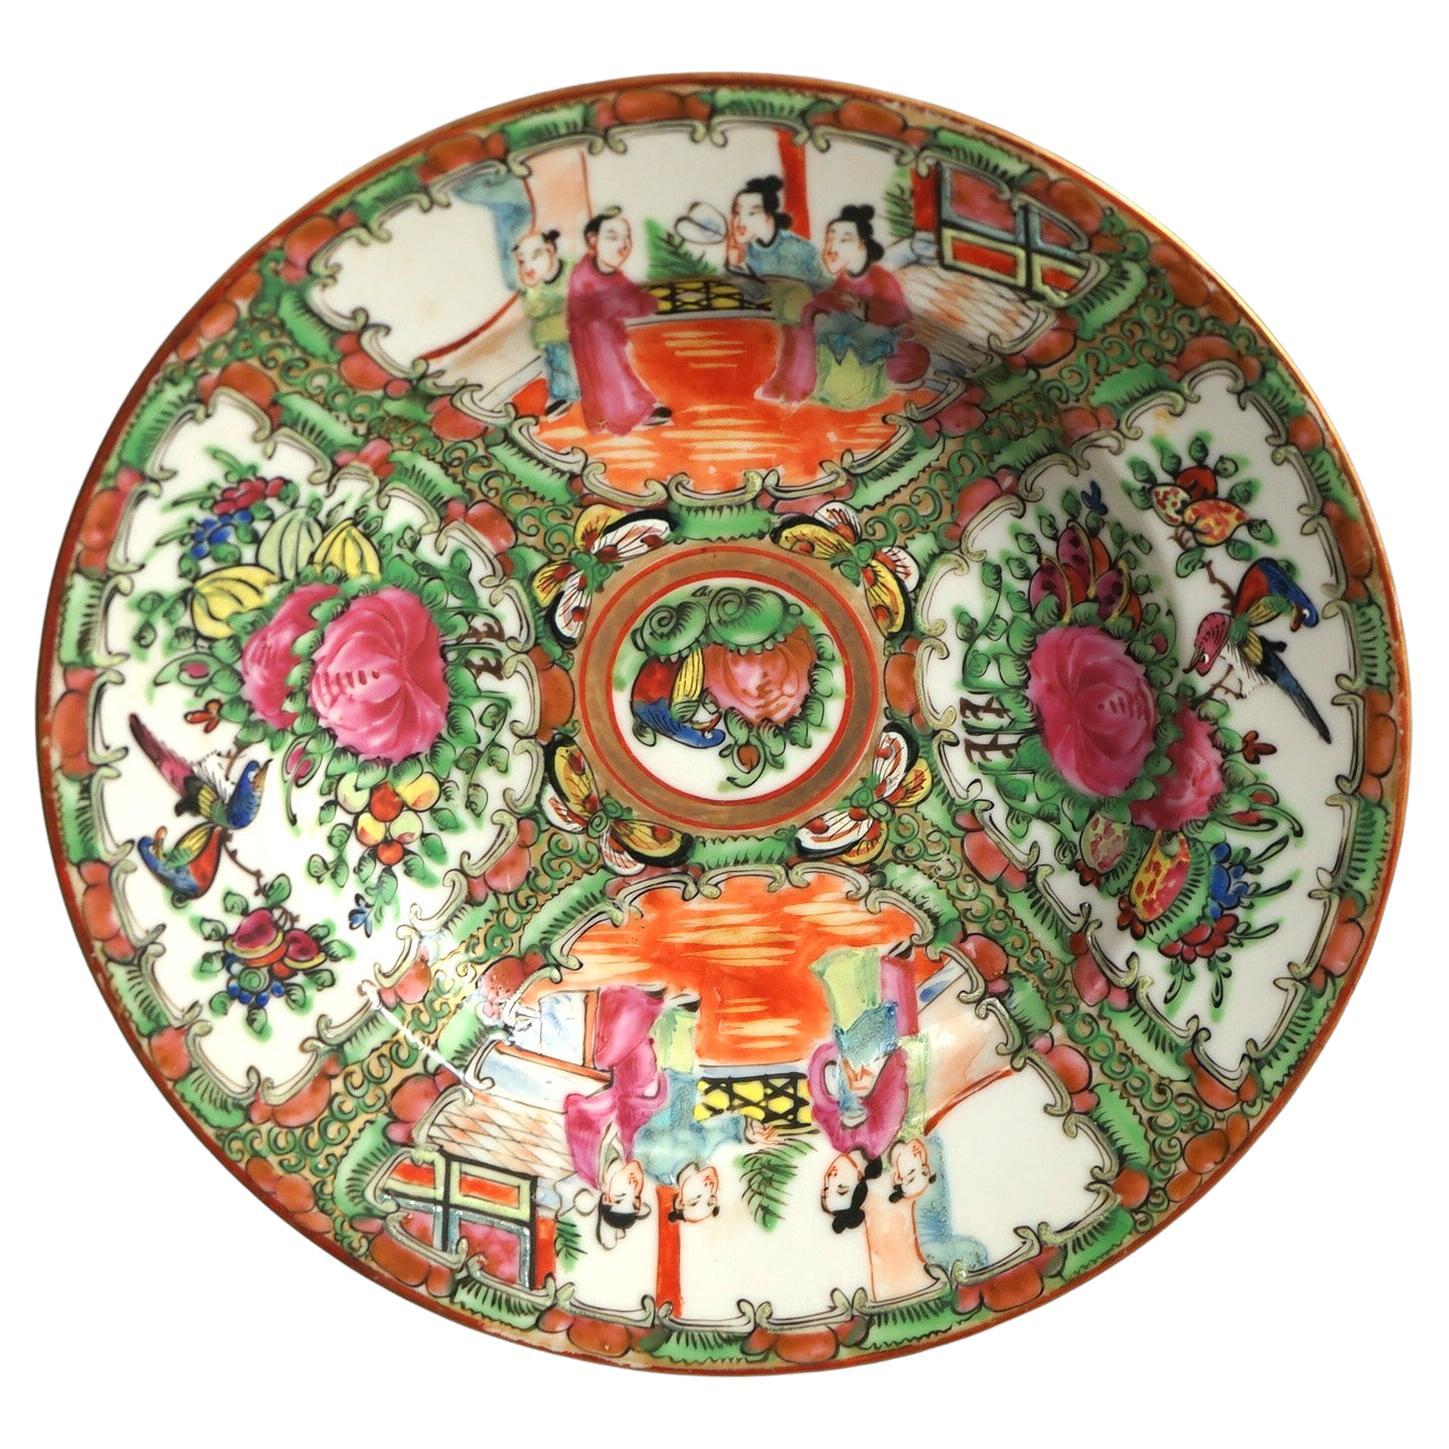 Antike chinesische Rosenmedaillon-Porzellanschale mit Gärten und Figuren aus Porzellan, um 1900